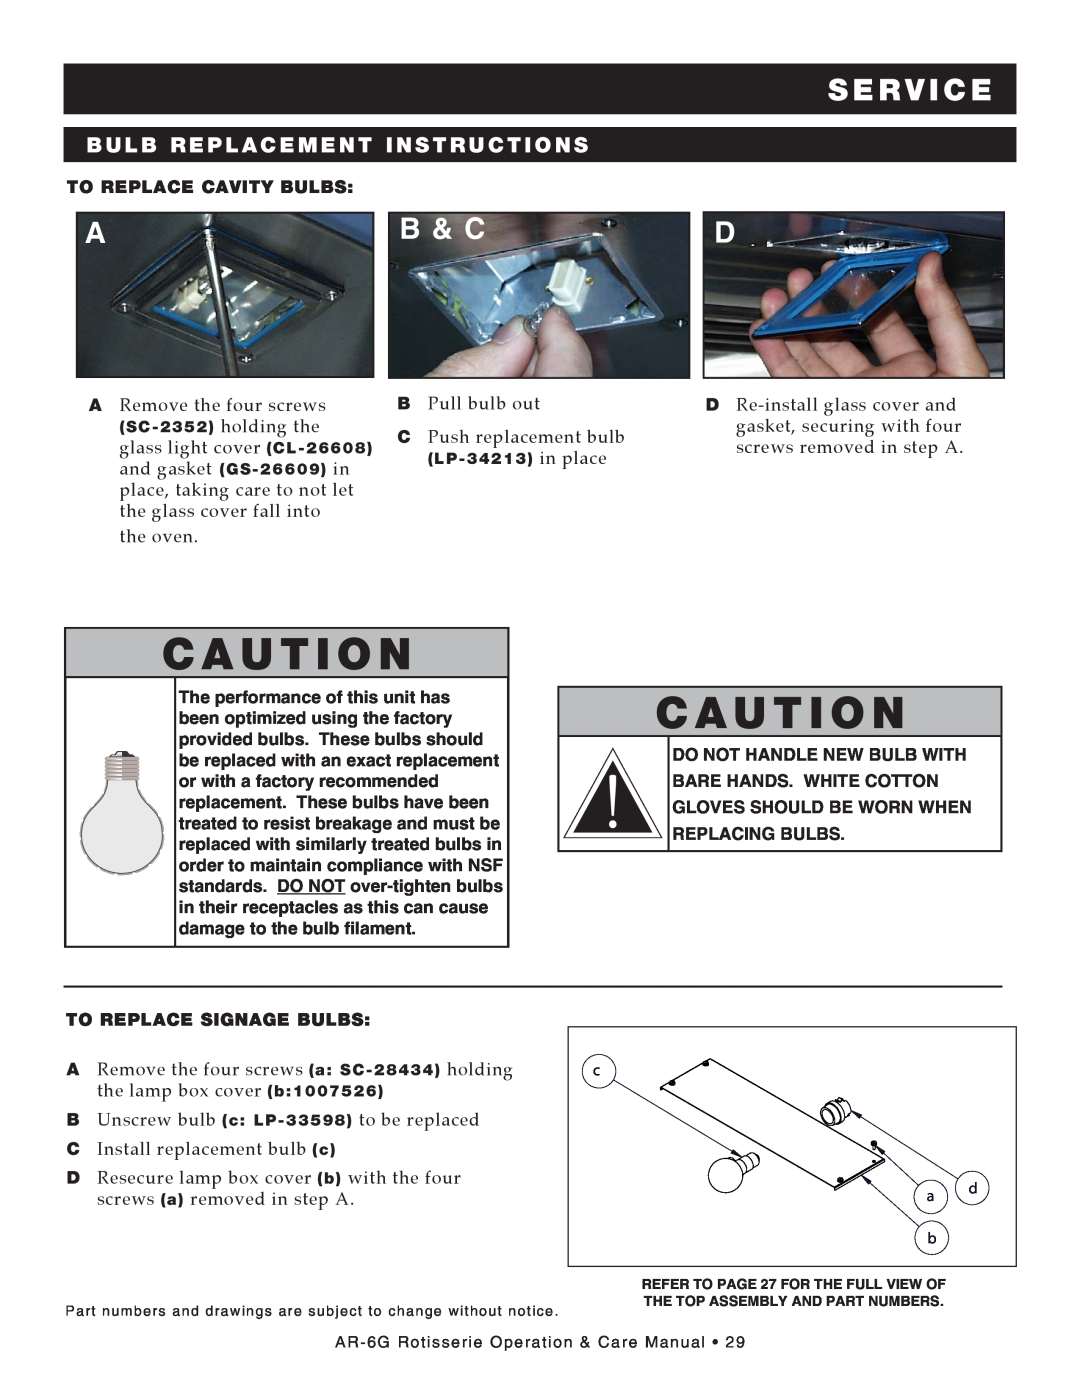 Alto-Shaam AR-6G manual bulb replacement instructions, c a U t I o n, s e rv ic e, B & C, To Replace Cavity Bulbs 